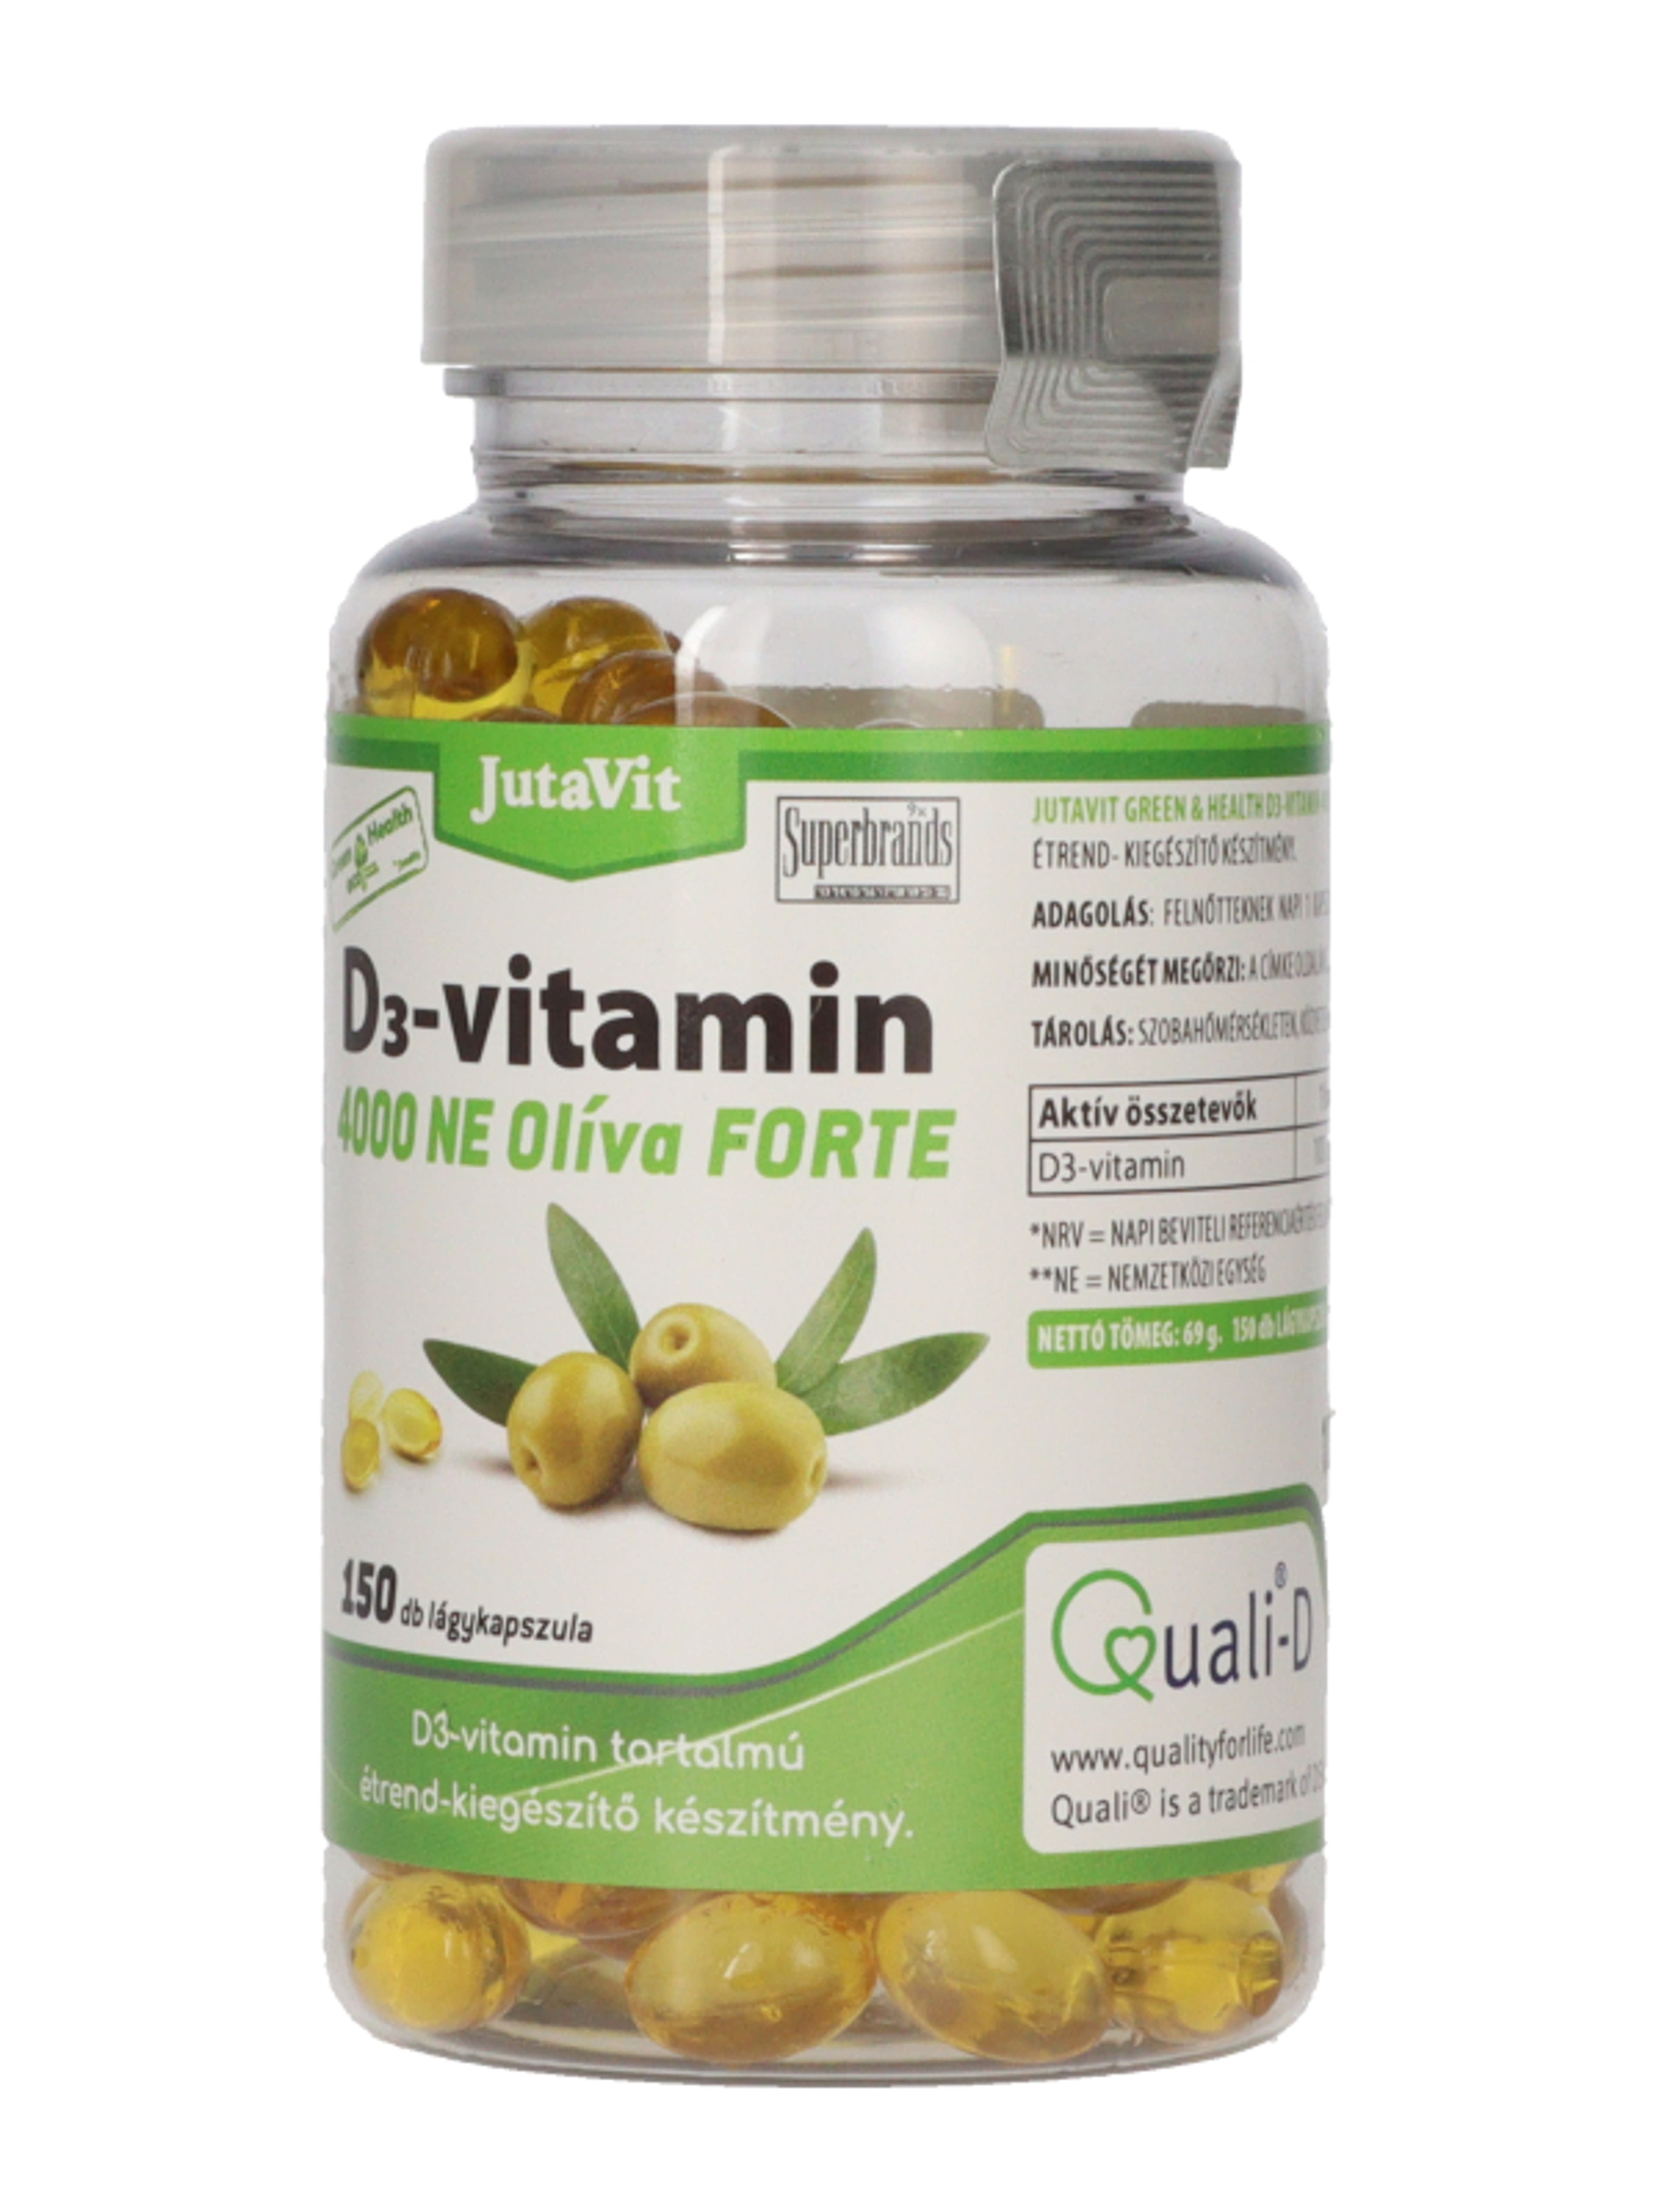 Jutavit Green & Health D3-vitamin 4000 NE Olíva Forte étrend-kiegészítő lágykapszula - 150 db-3